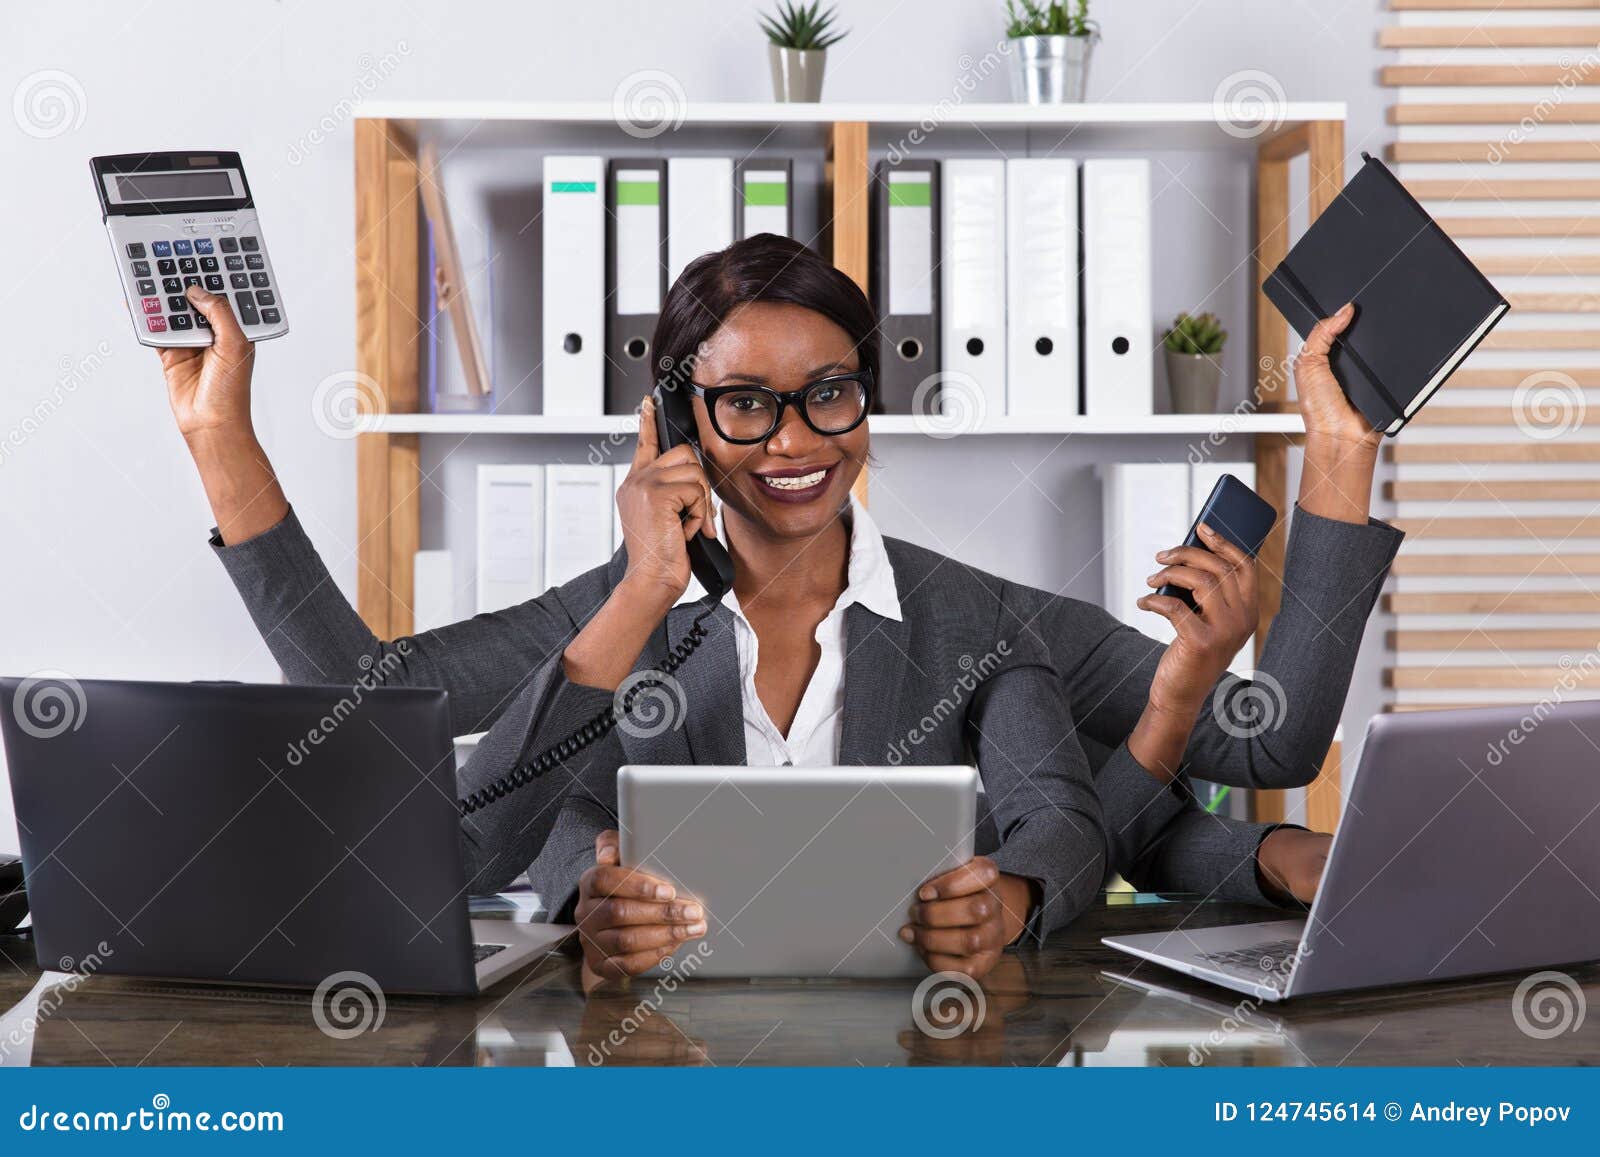 tired woman doing multitasking work on laptop